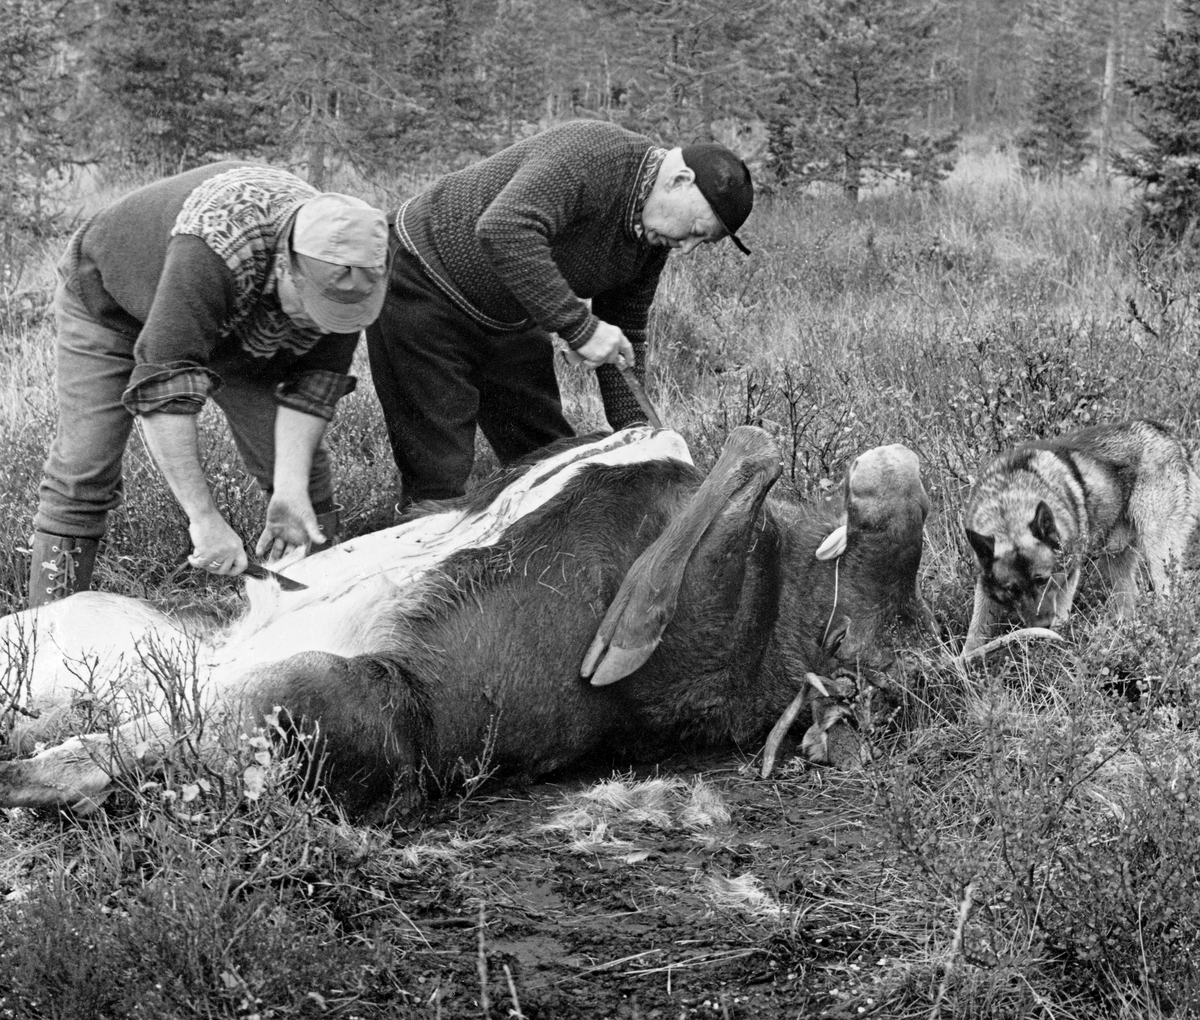 Elgjegerne Ulf Jerpseth (til venstre) og Hans Berger flår en elgokse som jaktlaget deres felte i utkanten av ei myr øst for Mårlia i Slemdalen i Nordre Osen (Åmot i Hedmark) i månedsskiftet september-oktober 1977.  Karene har veltet elgen over på ryggen og var i ferd med å skjære et rett snitt i bukhuden, fra halsen bakover mot kjønnsorganene, da dette bildet ble tatt.  Jerpseth var kledd i bomullsbukser og ullgenser med mønstret skulderparti, og han hadde ei skyggelue av bomull på hodet.  Berger var iført svarte vadmelsbukser, islender og skjoldlue.  Elghunden Svarten snuste på marka omkring det døde dyrets hode da fotografiet ble tatt. Elgjakt. Storviltjakt. Jegere. Elgjegere.